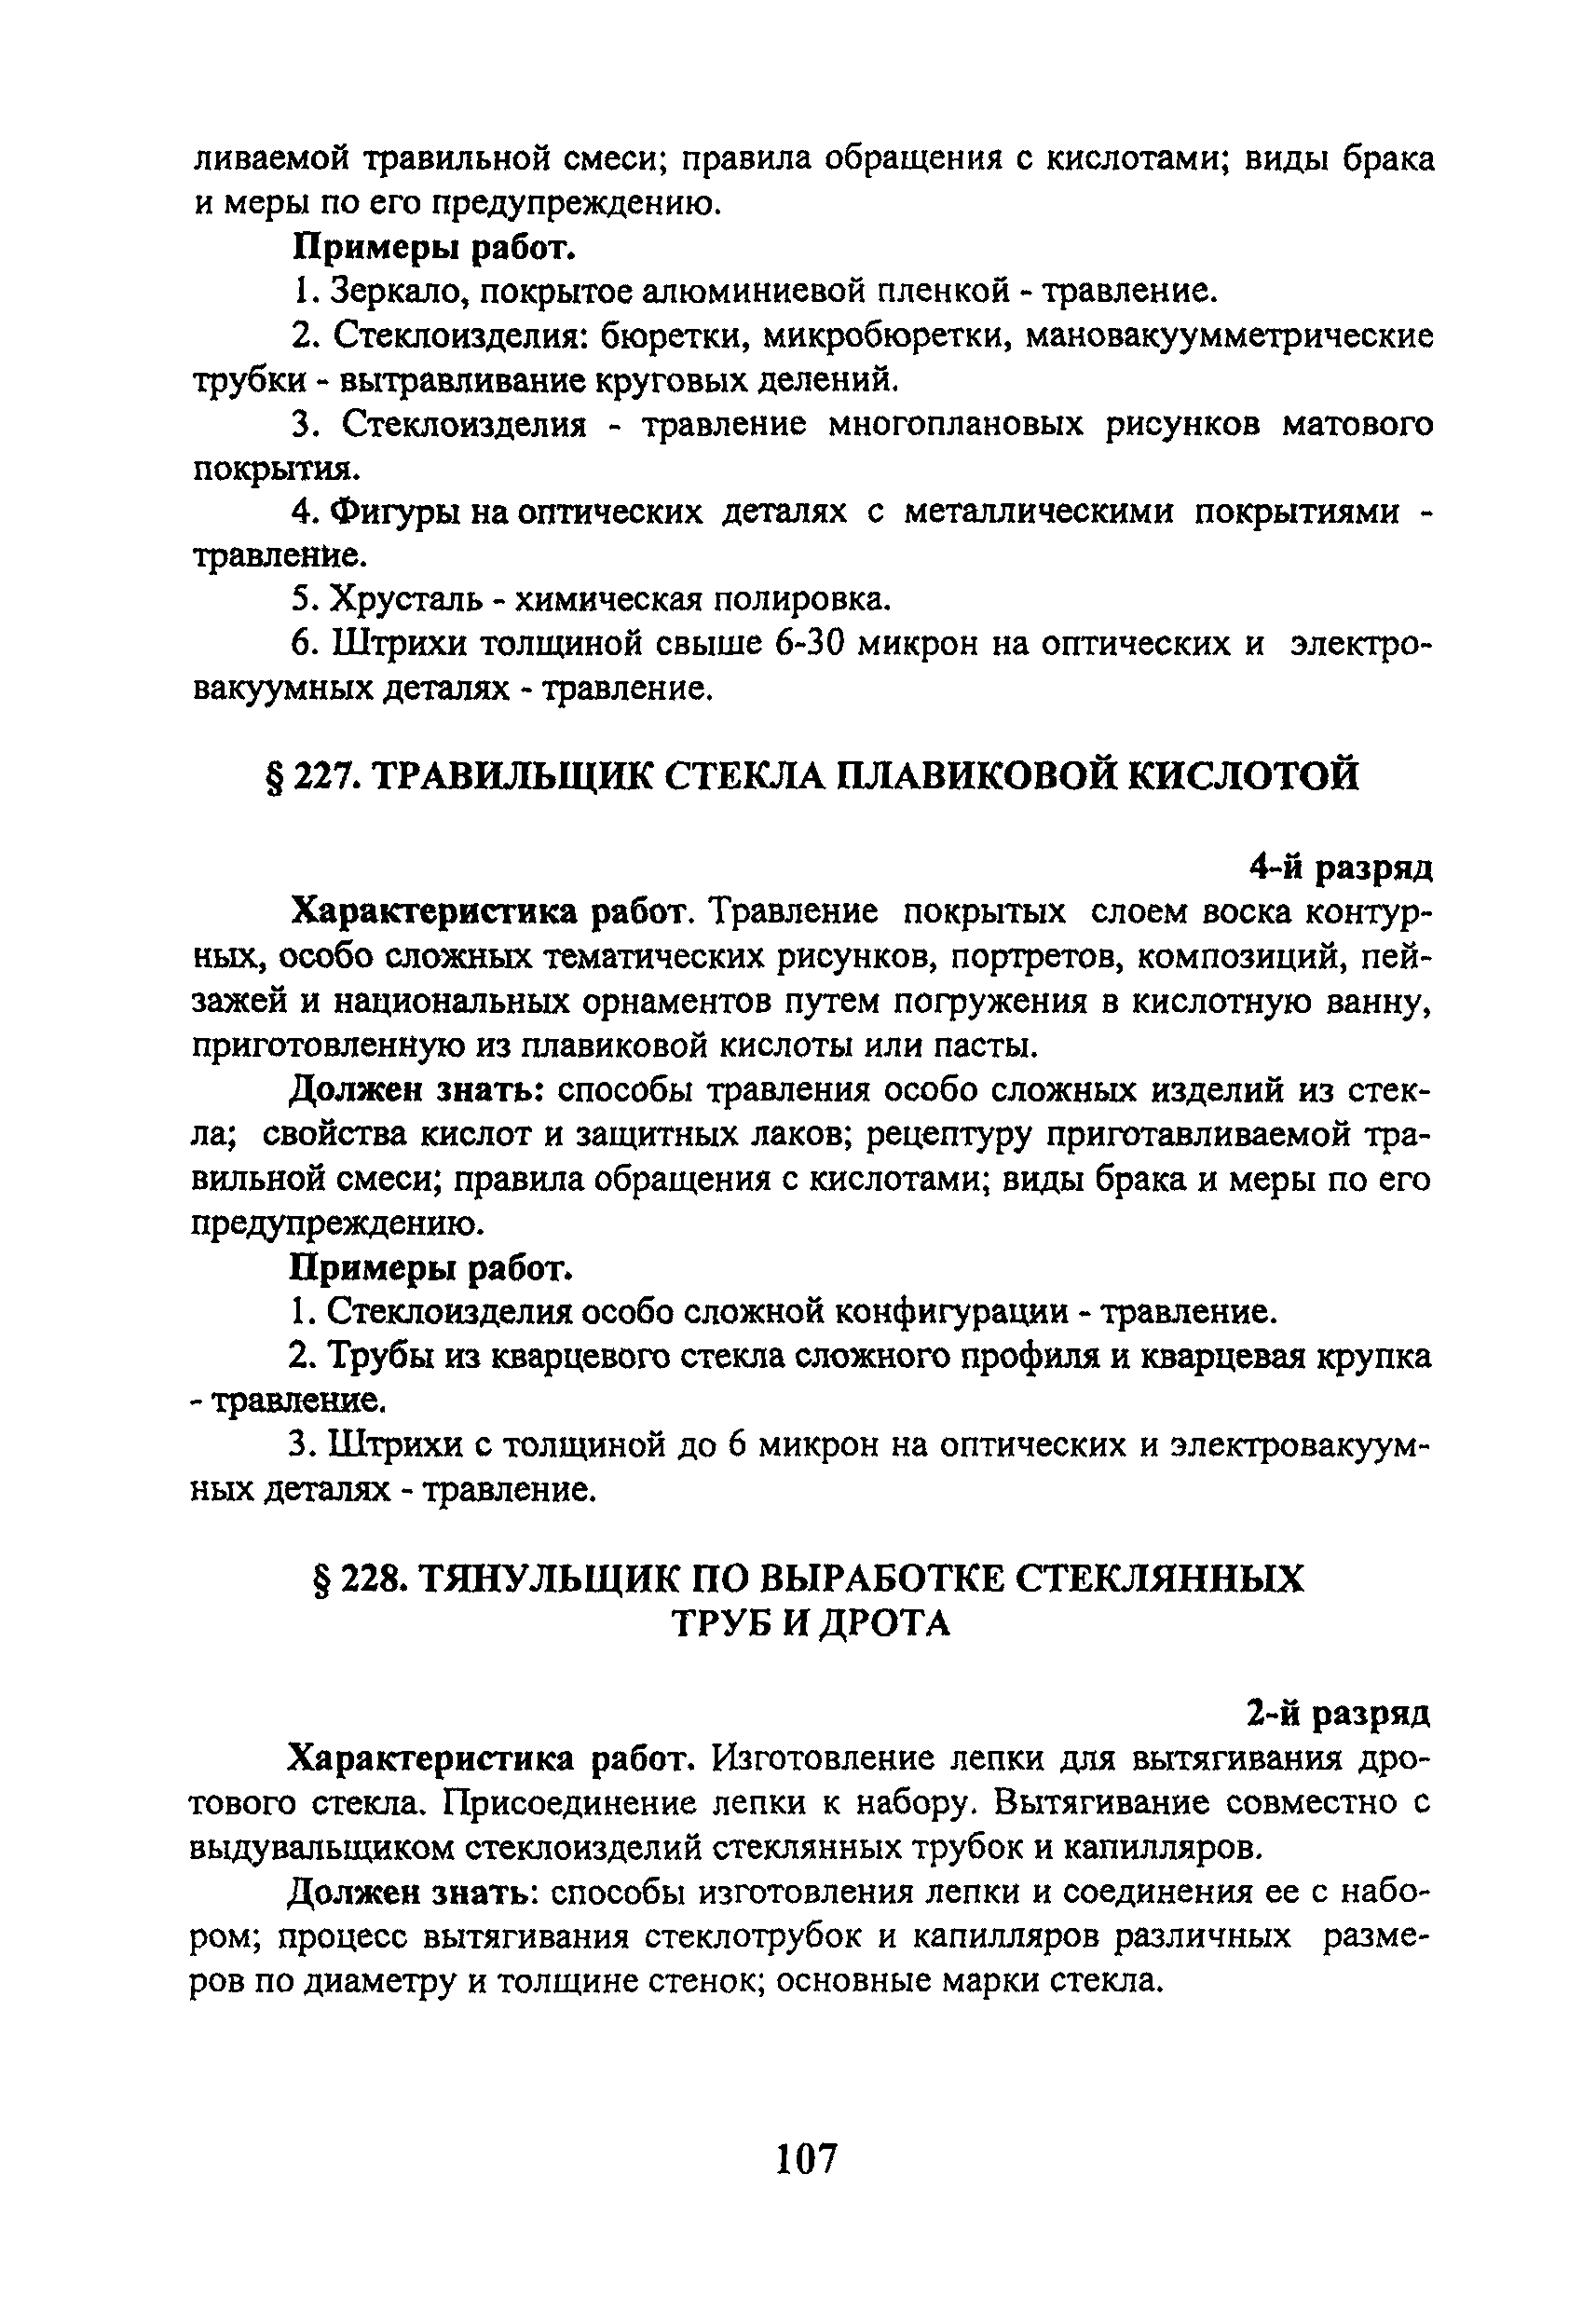 ЕТКС Выпуск 41